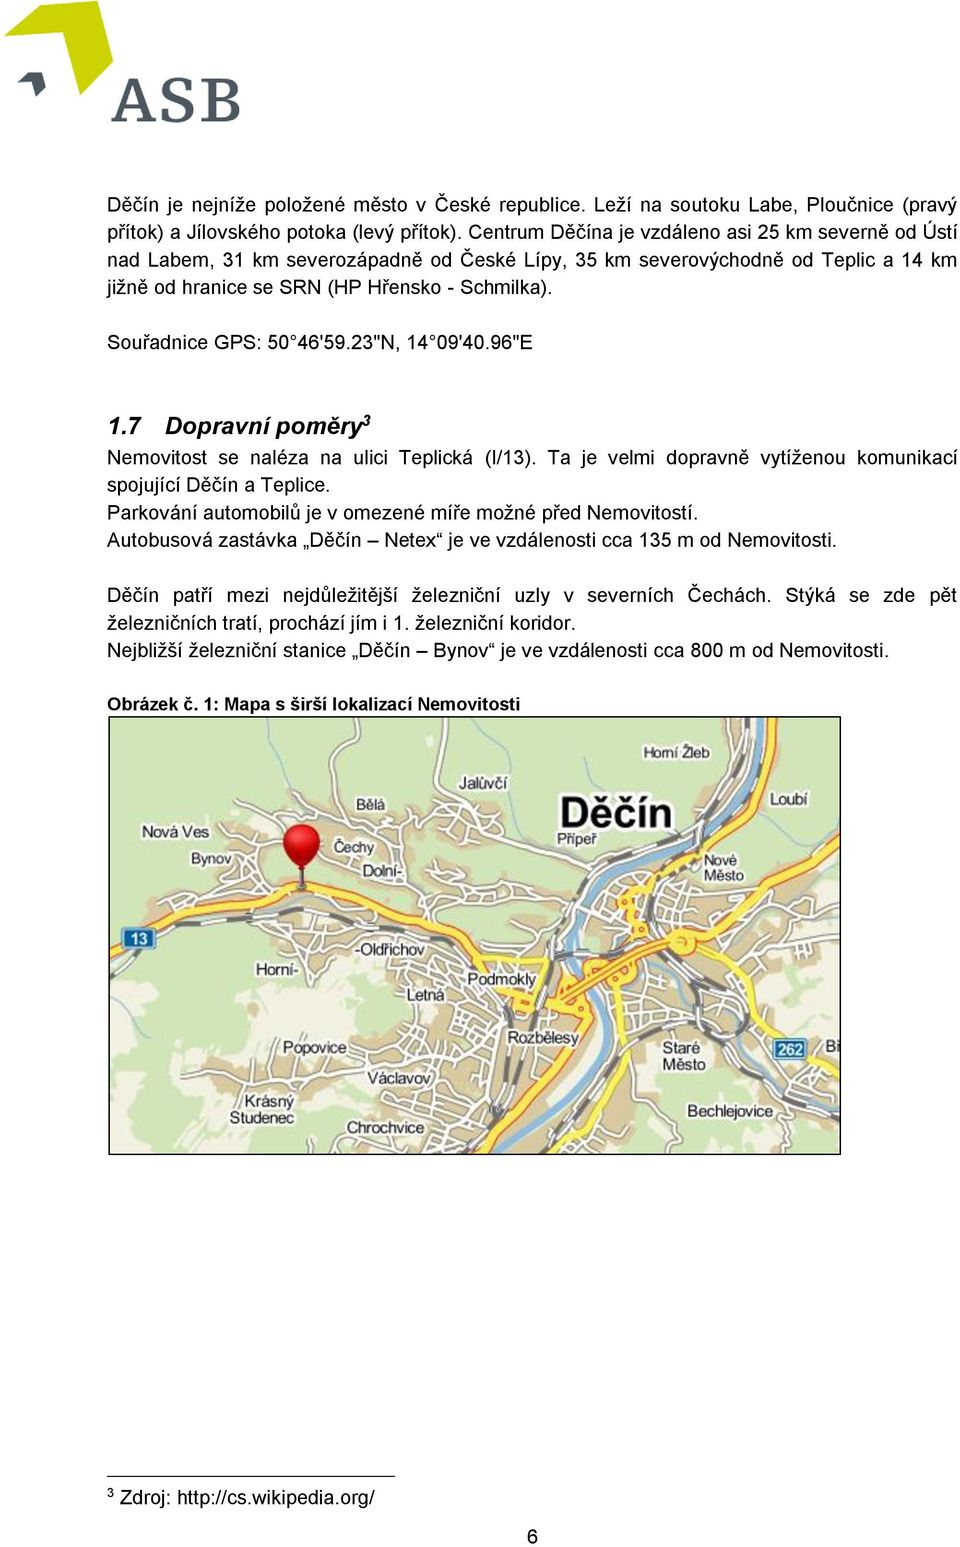 Souřadnice GPS: 50 46'59.23"N, 14 09'40.96"E 1.7 Dopravní poměry 3 Nemovitost se naléza na ulici Teplická (I/13). Ta je velmi dopravně vytíženou komunikací spojující Děčín a Teplice.